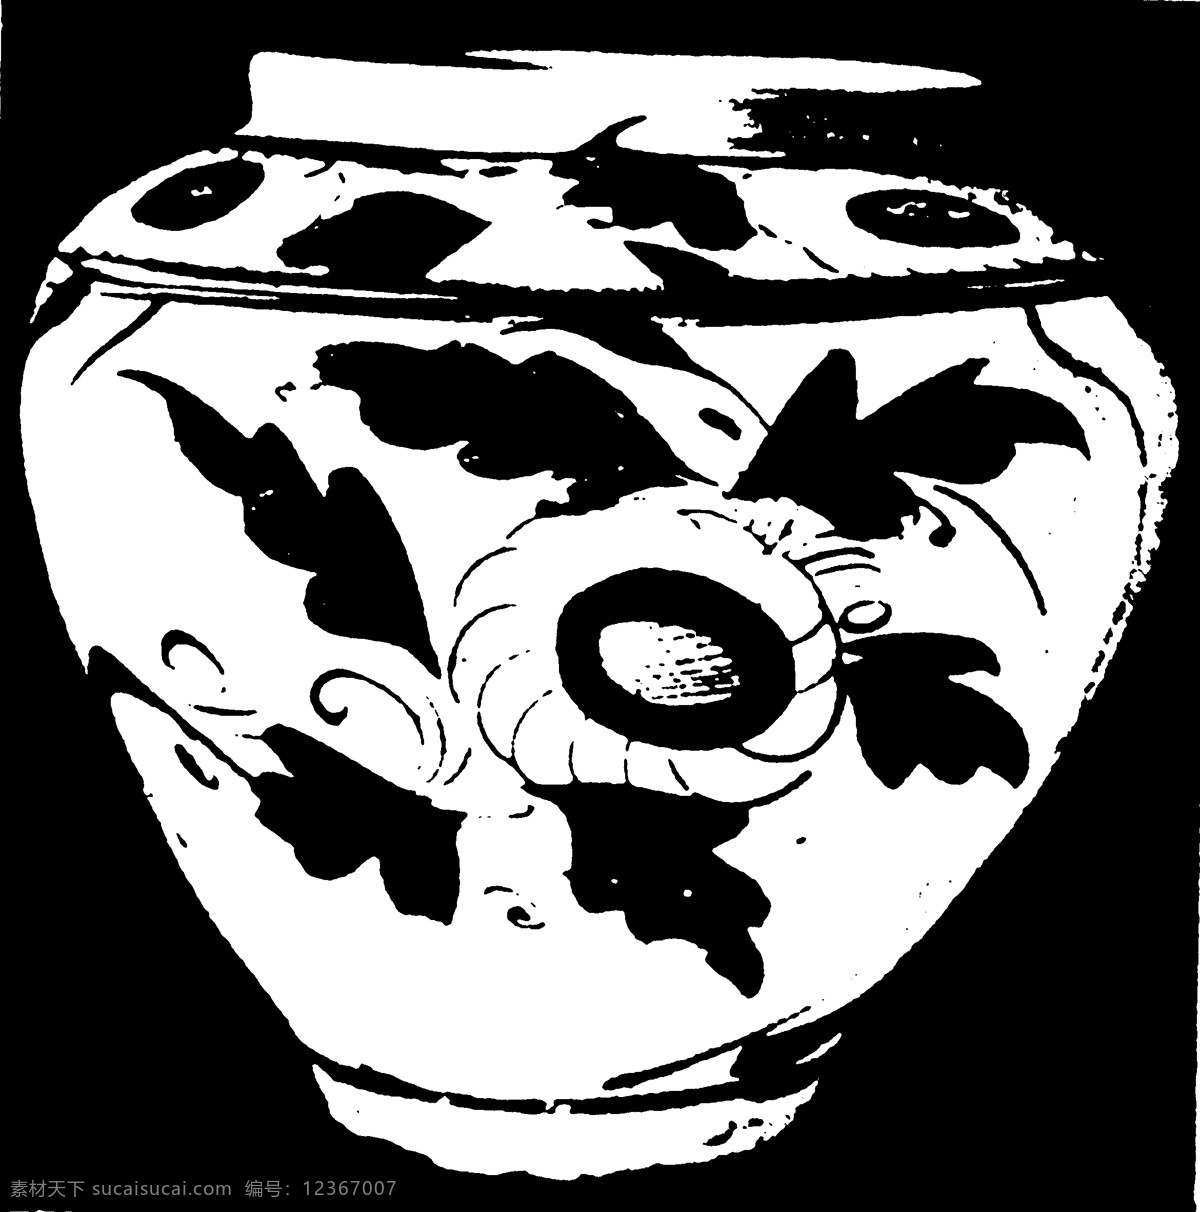 器物图案 两宋时代图案 中国 传统 图案 设计素材 装饰图案 书画美术 黑色